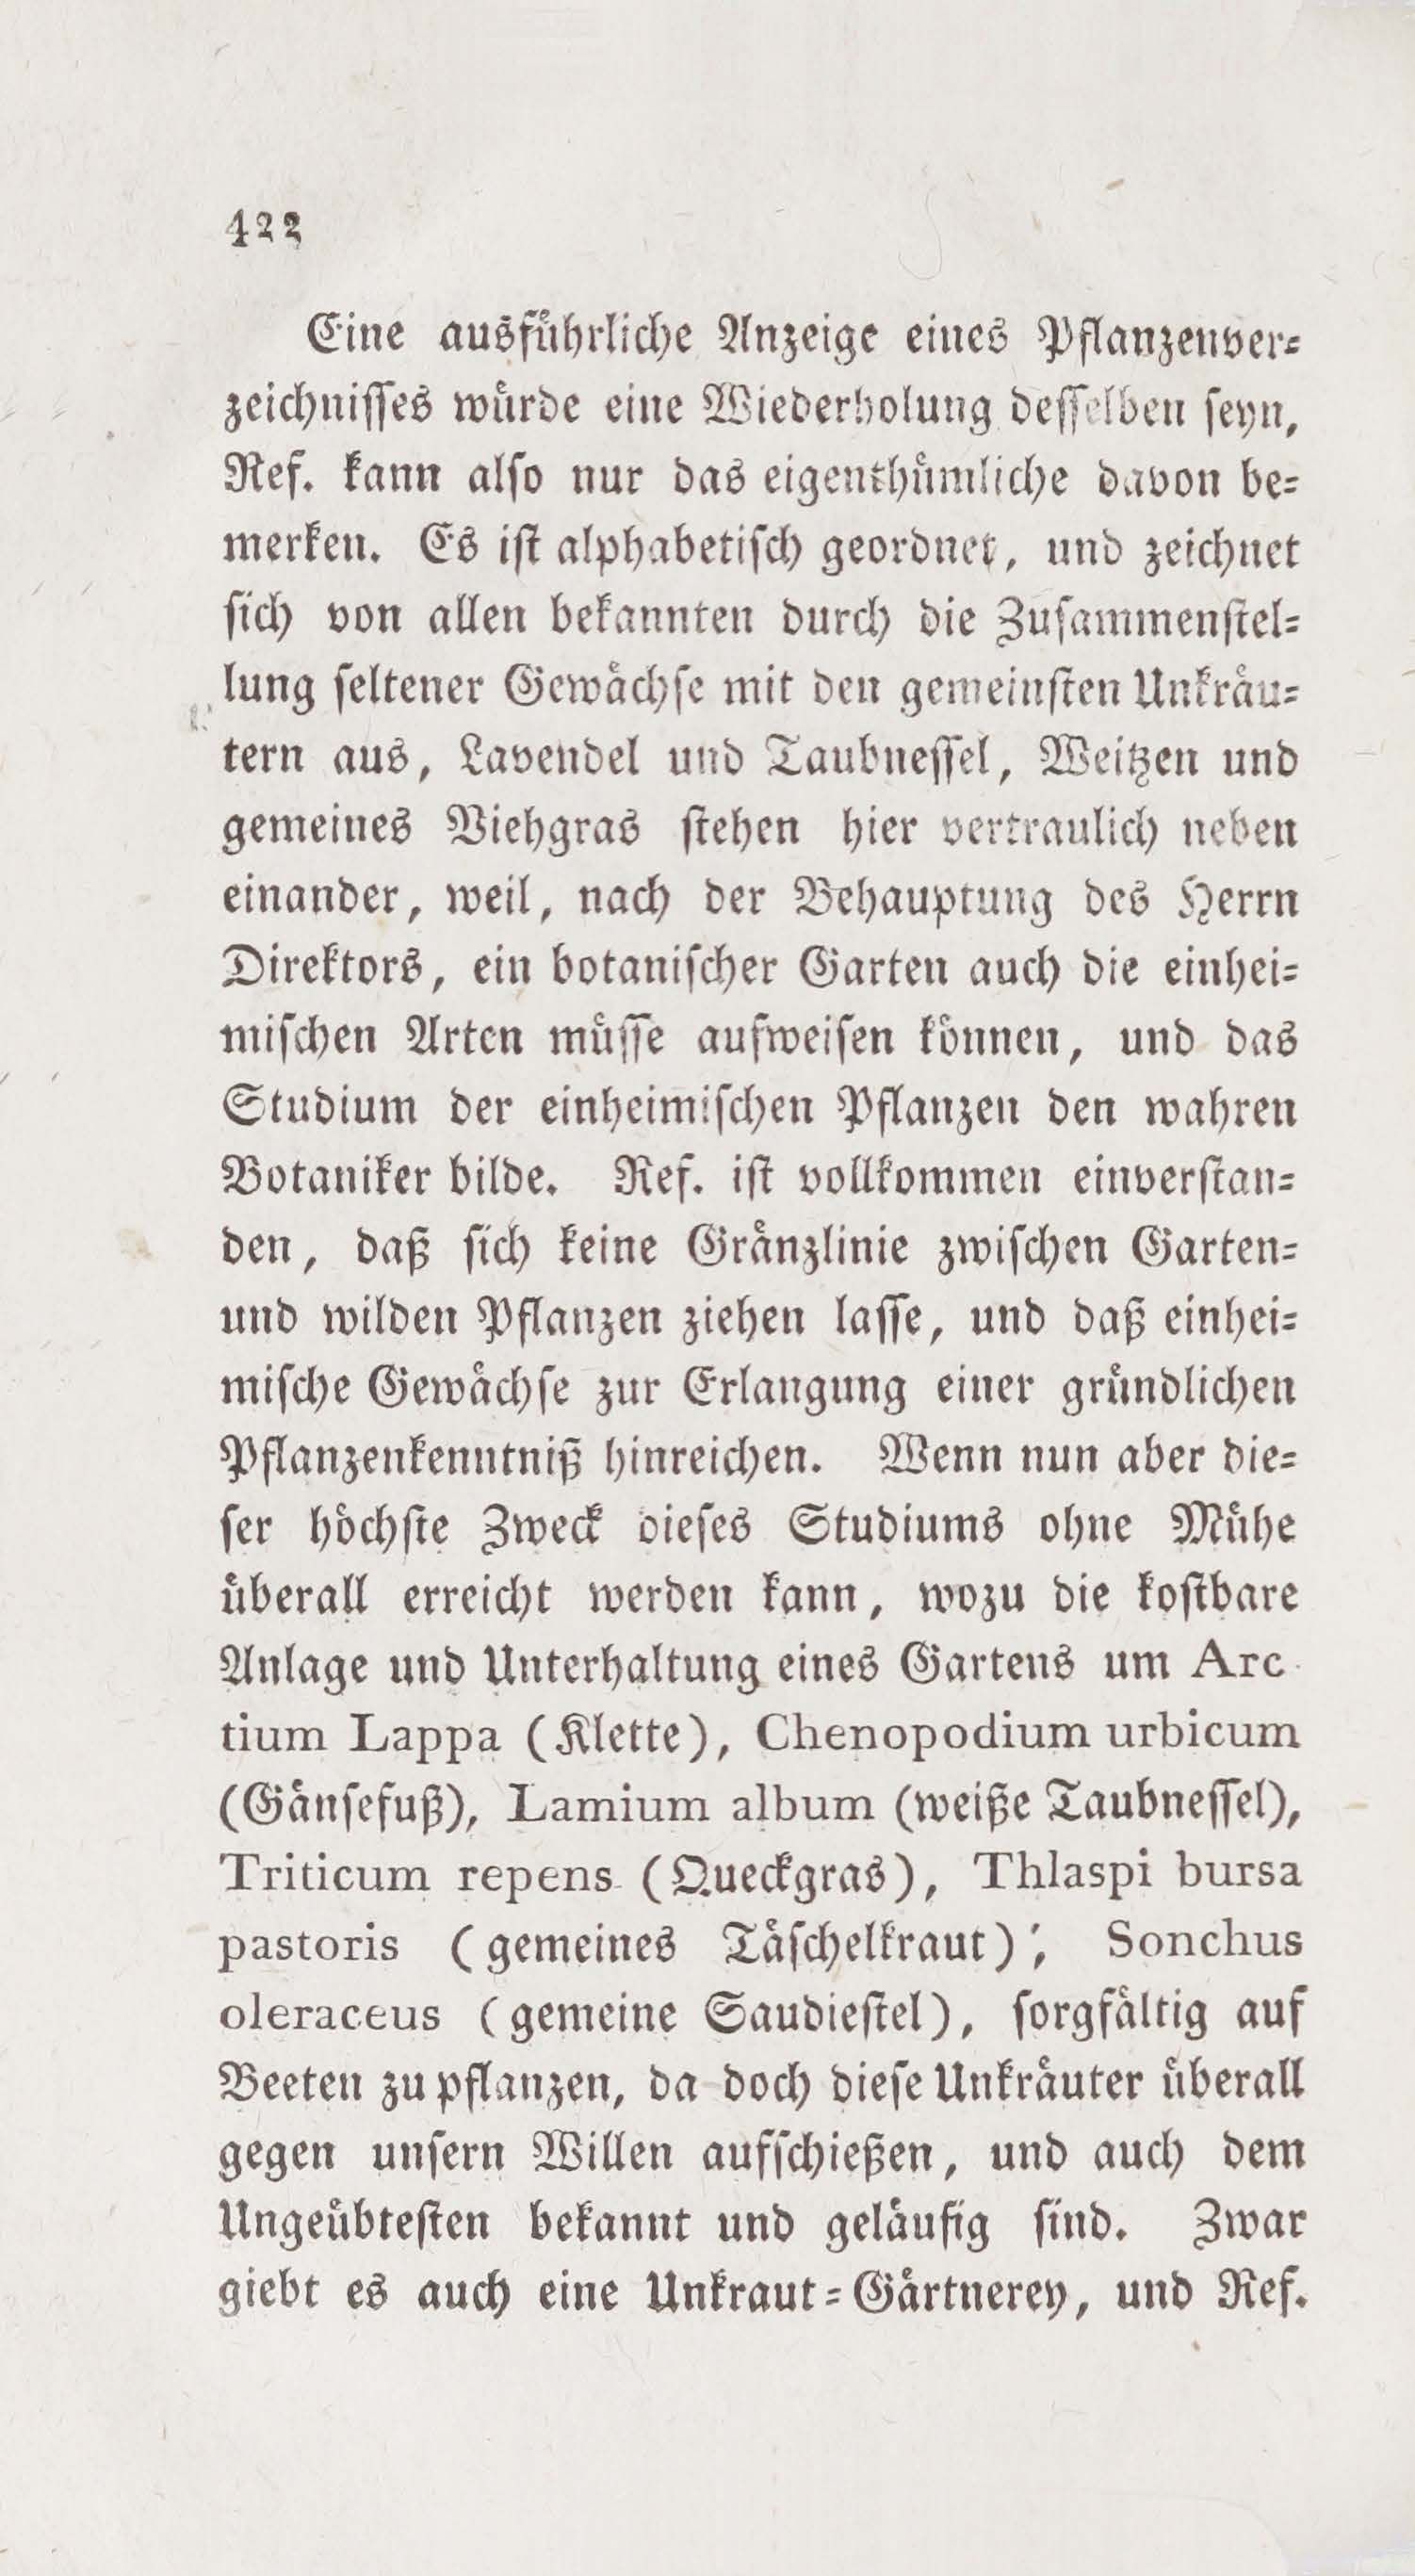 Wöchentliche Unterhaltungen (1805 – 1807) | 2618. (422) Основной текст